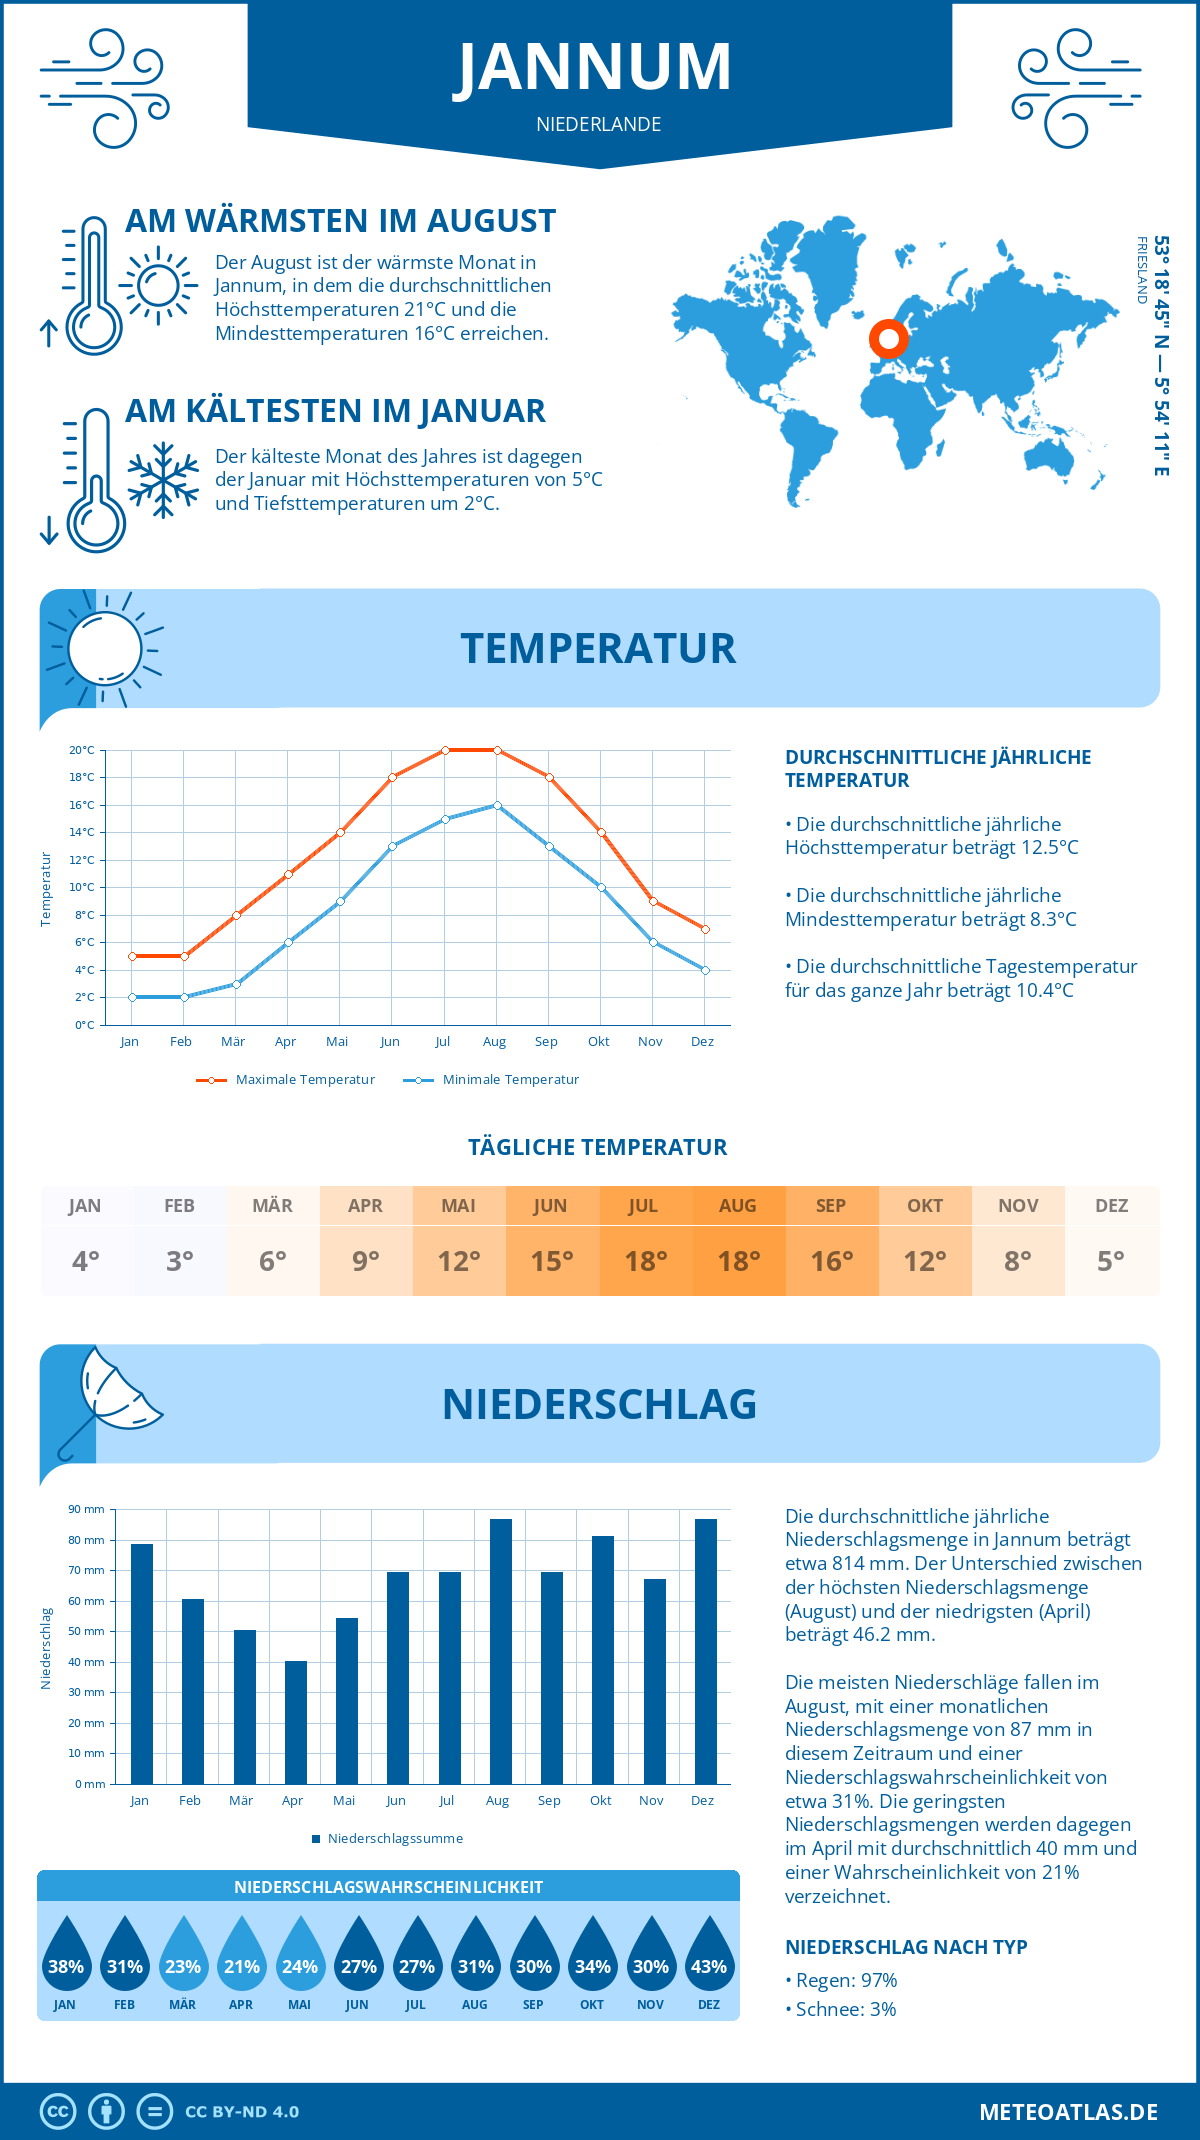 Wetter Jannum (Niederlande) - Temperatur und Niederschlag